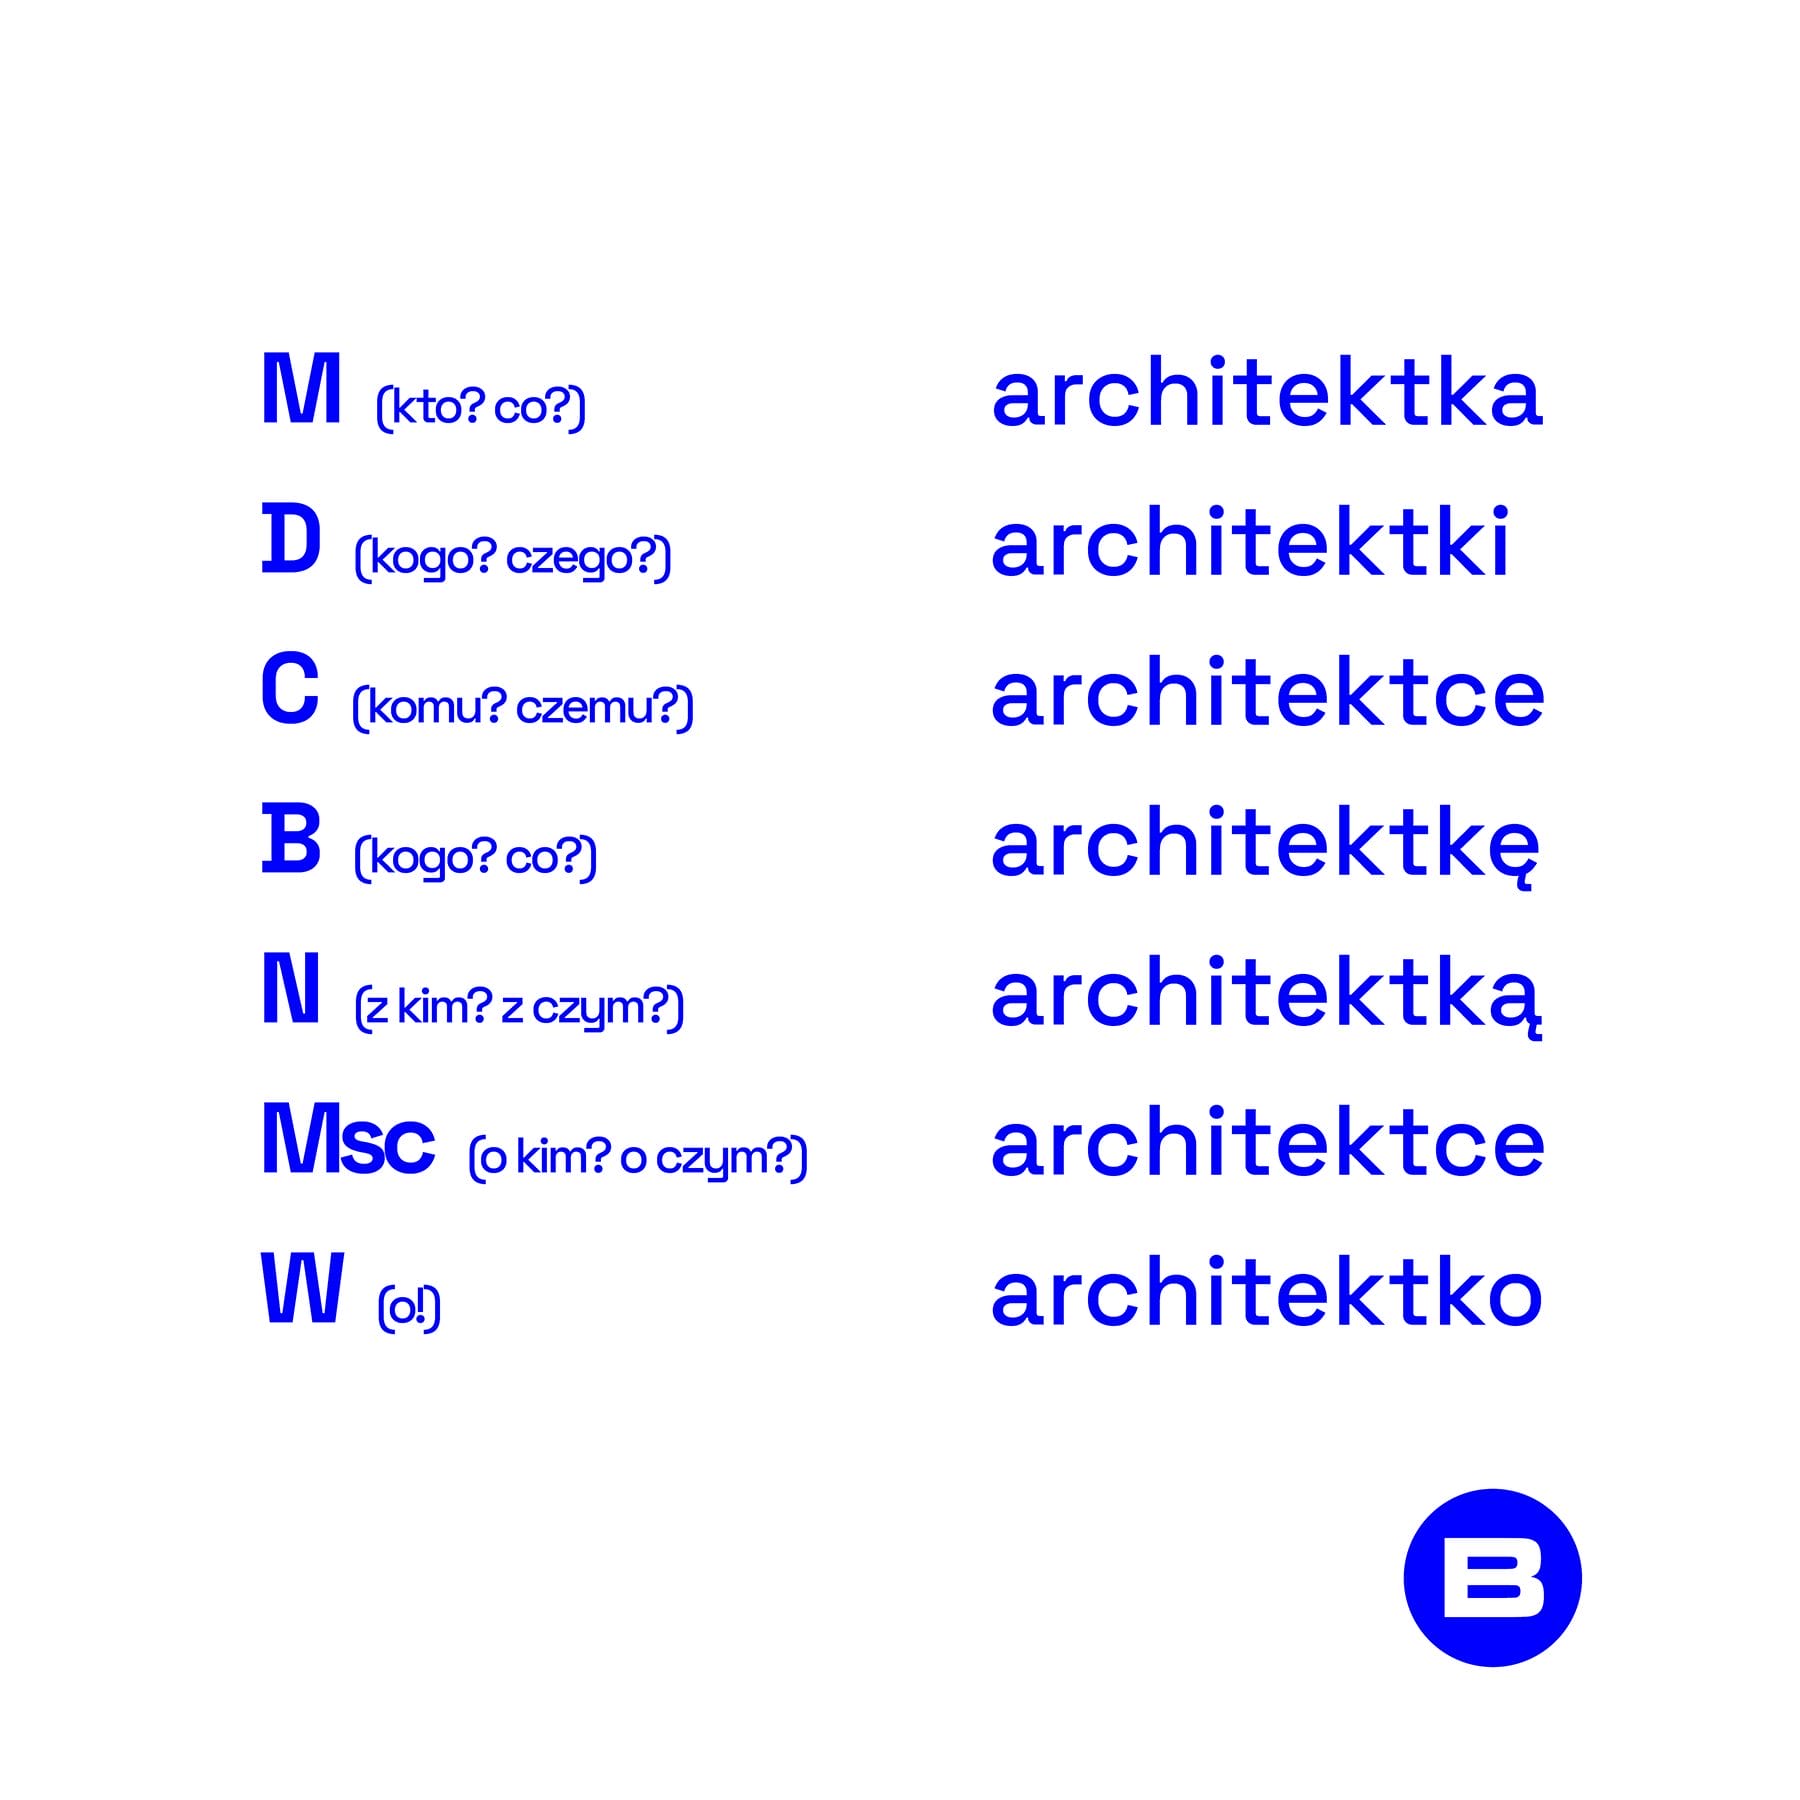 BAL_architektek_designalive-4